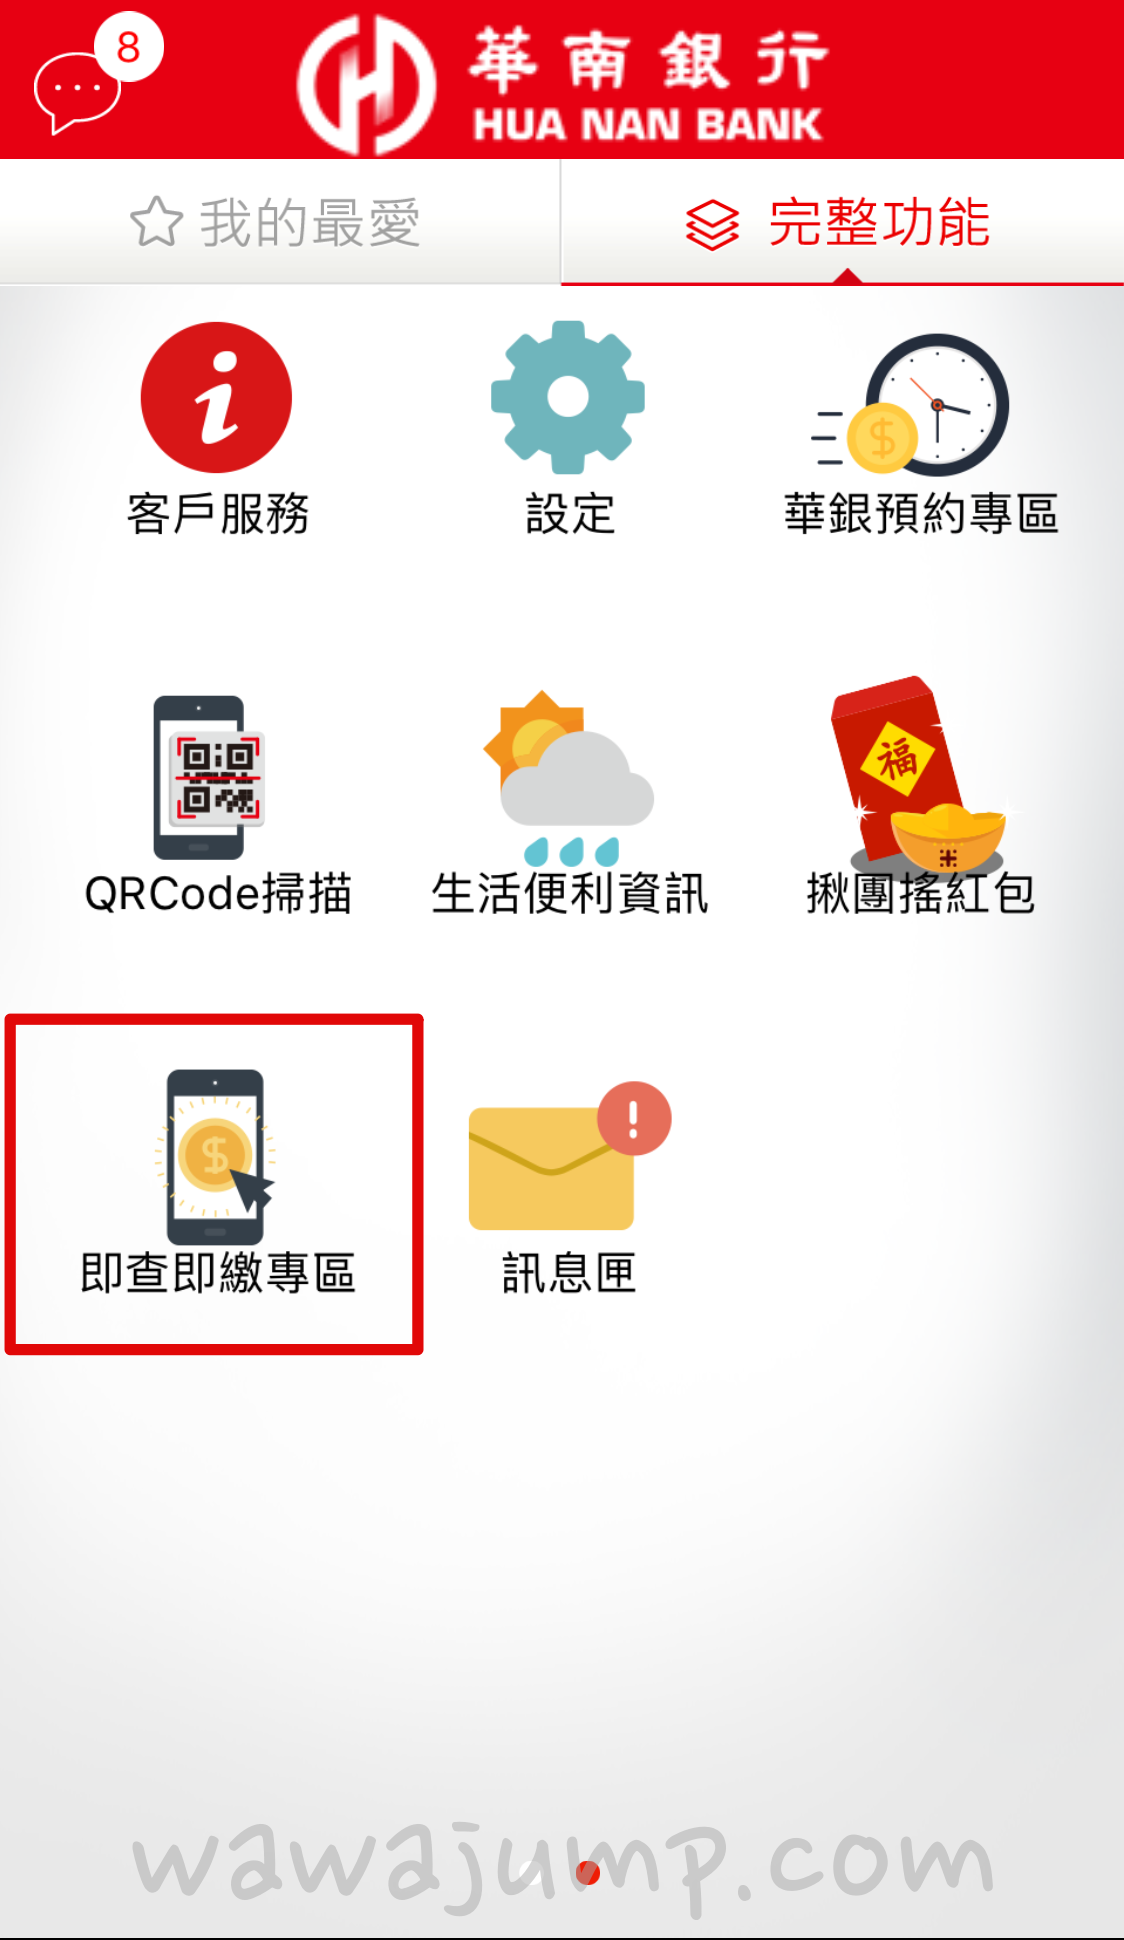 進入華南行動網APP 完整功能，在第二頁就能找到即查即繳專區